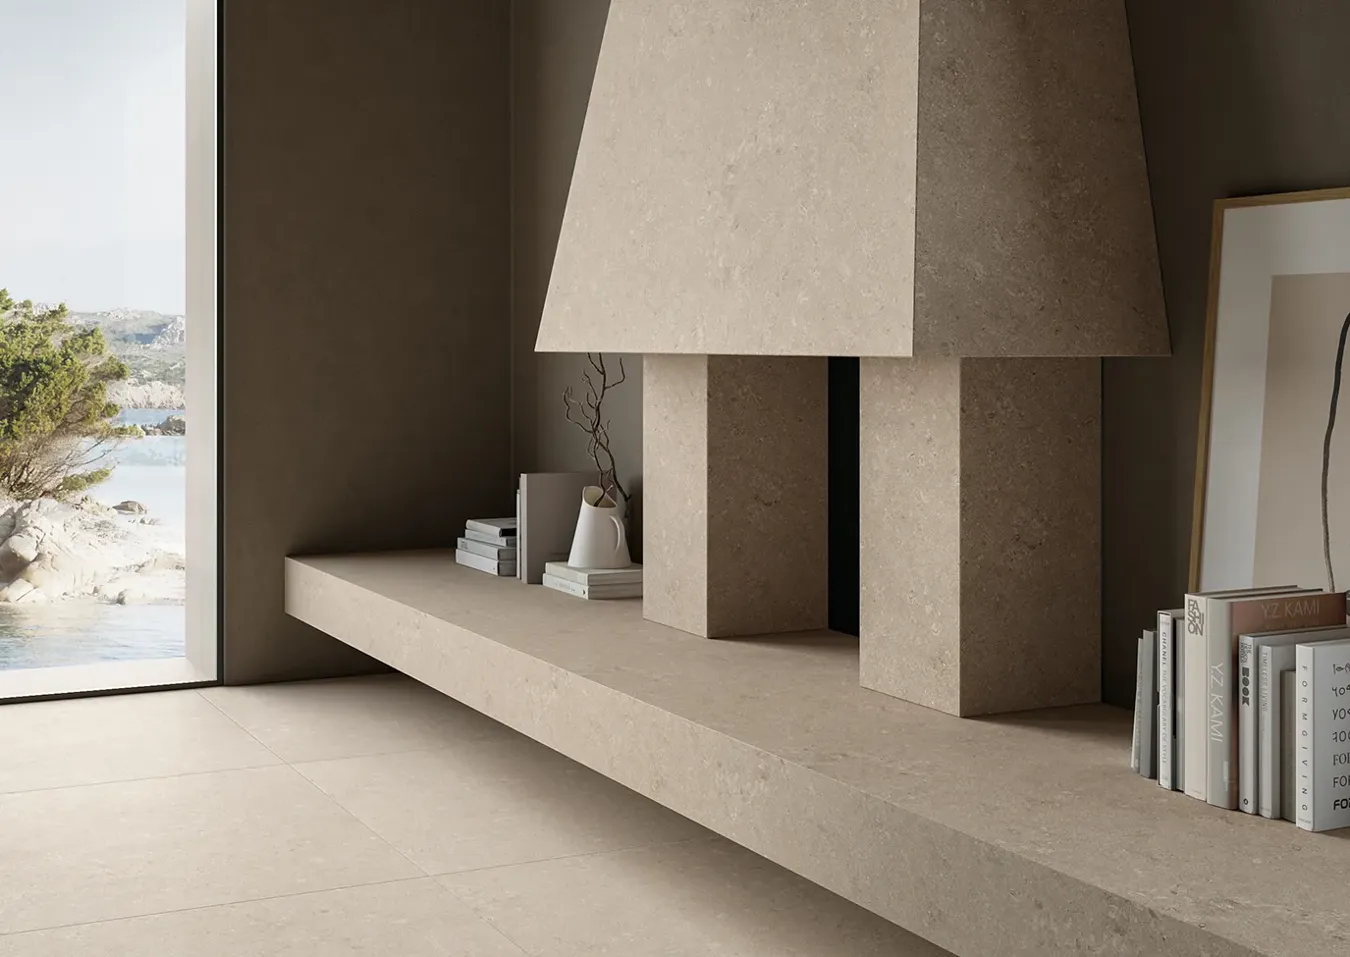 Design interno moderno con camino rivestito in piastrelle effetto pietra beige avorio, arredo minimalista e vista panoramica.